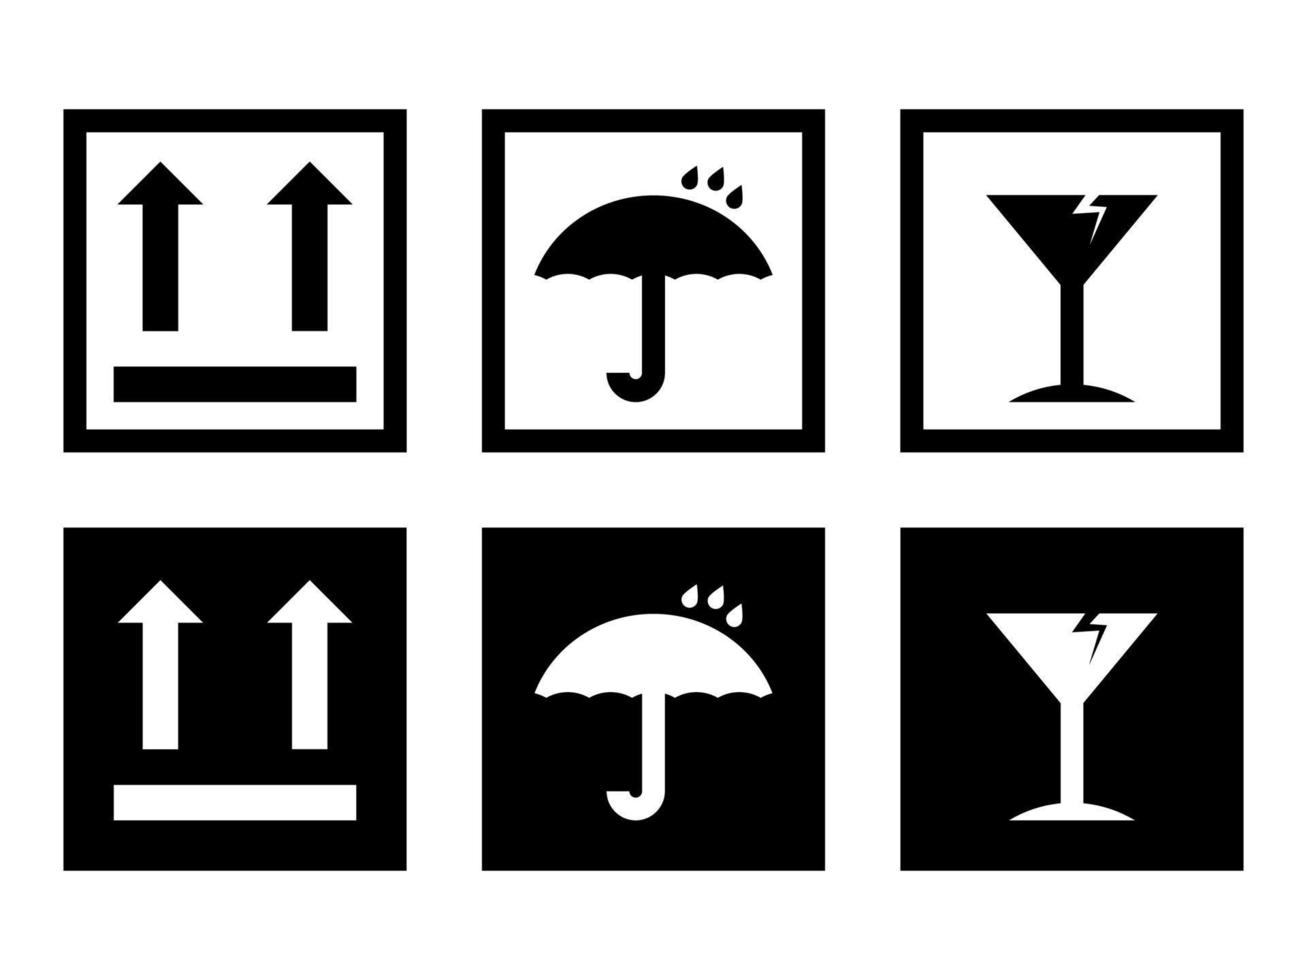 caja frágil, señales vectoriales de advertencia de carga colocadas en iconos de estilo moderno se encuentran en fondos blancos y negros. el paquete tiene seis iconos. vector